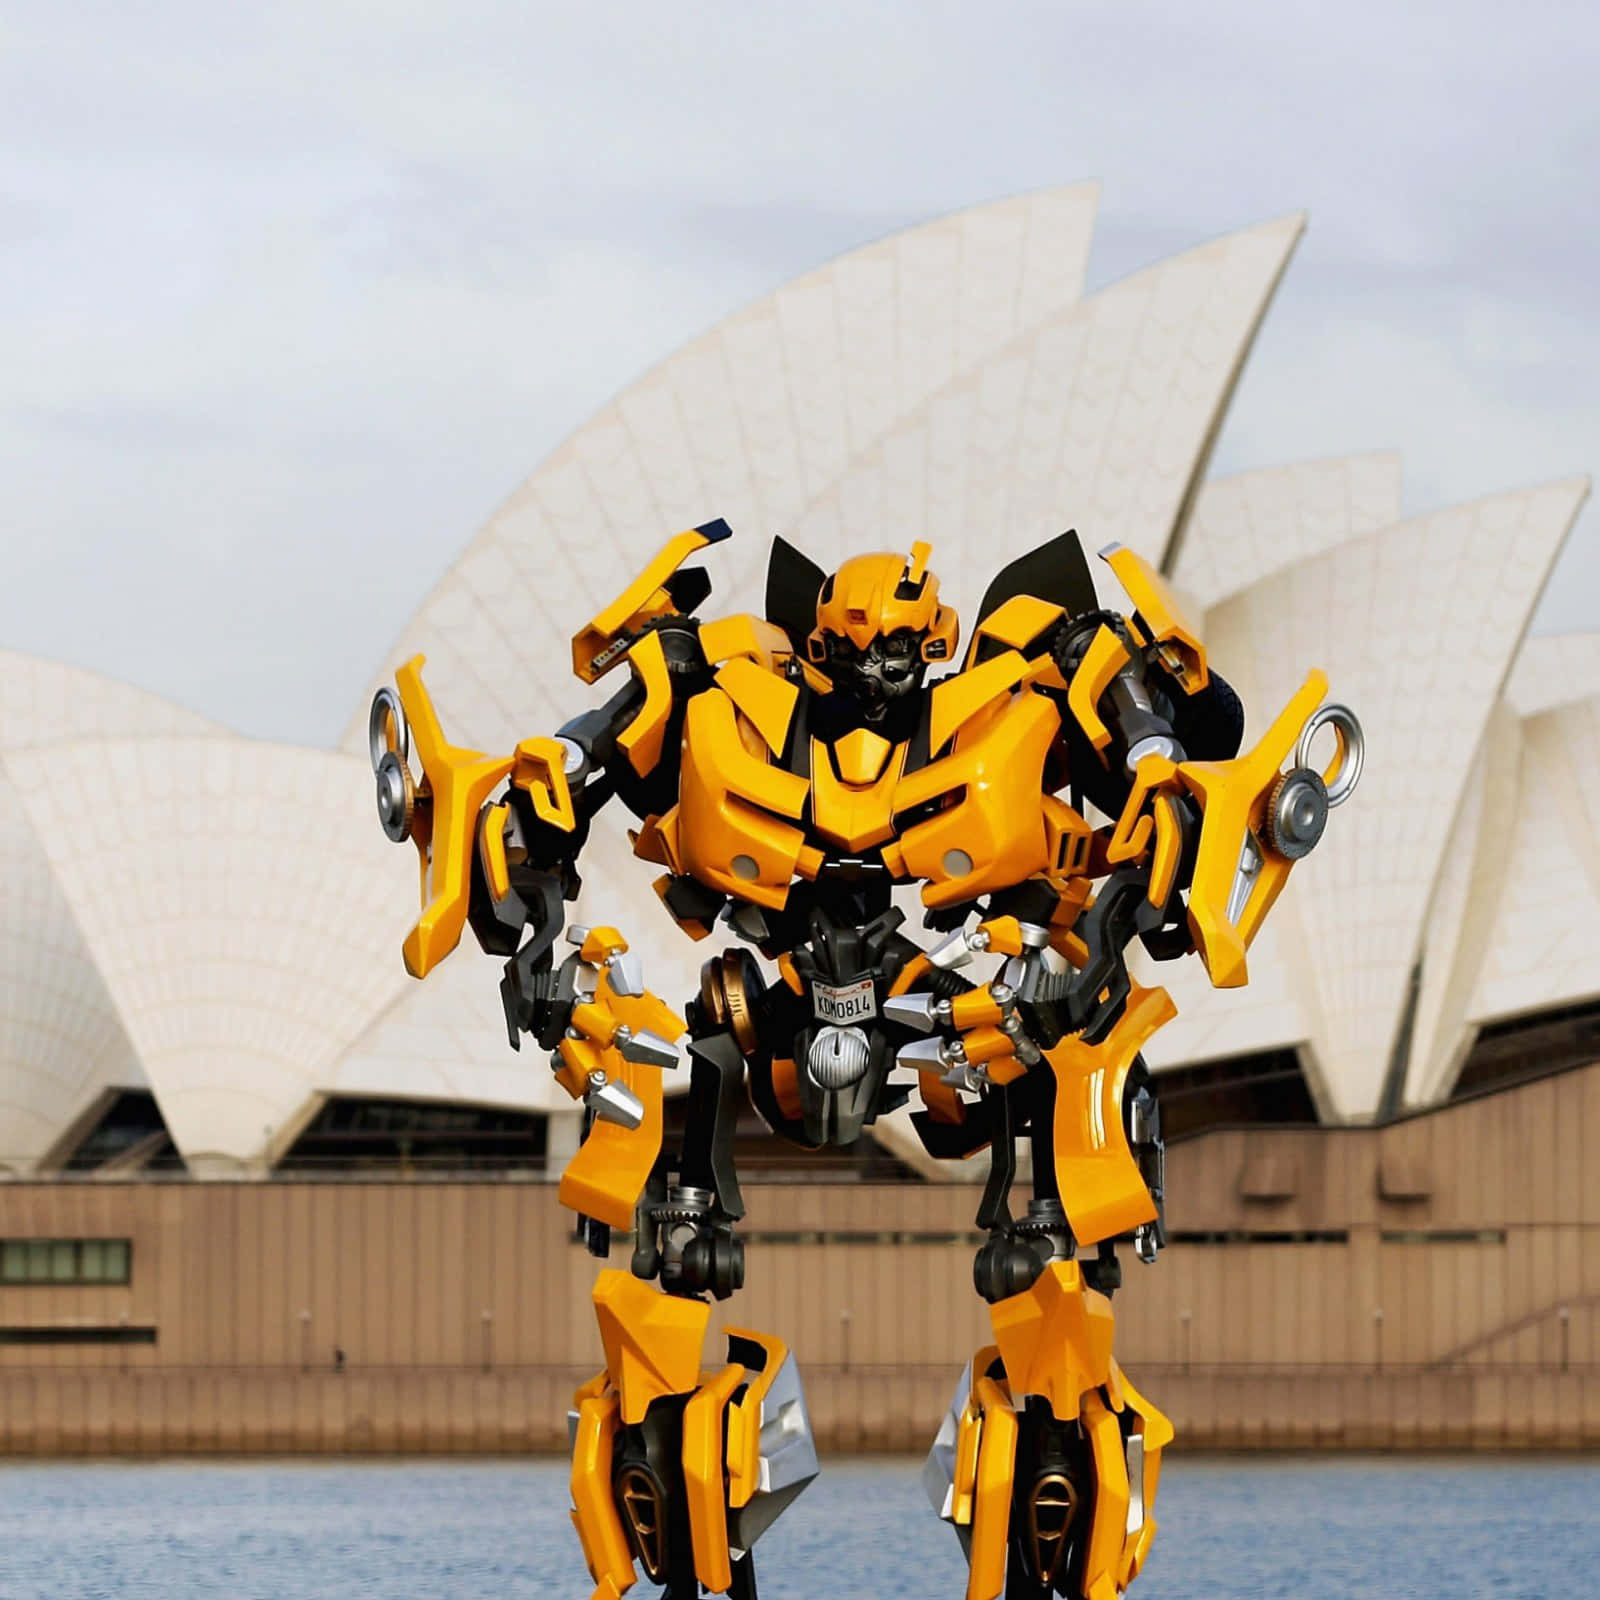 Immaginidi Bumblebee Transformers